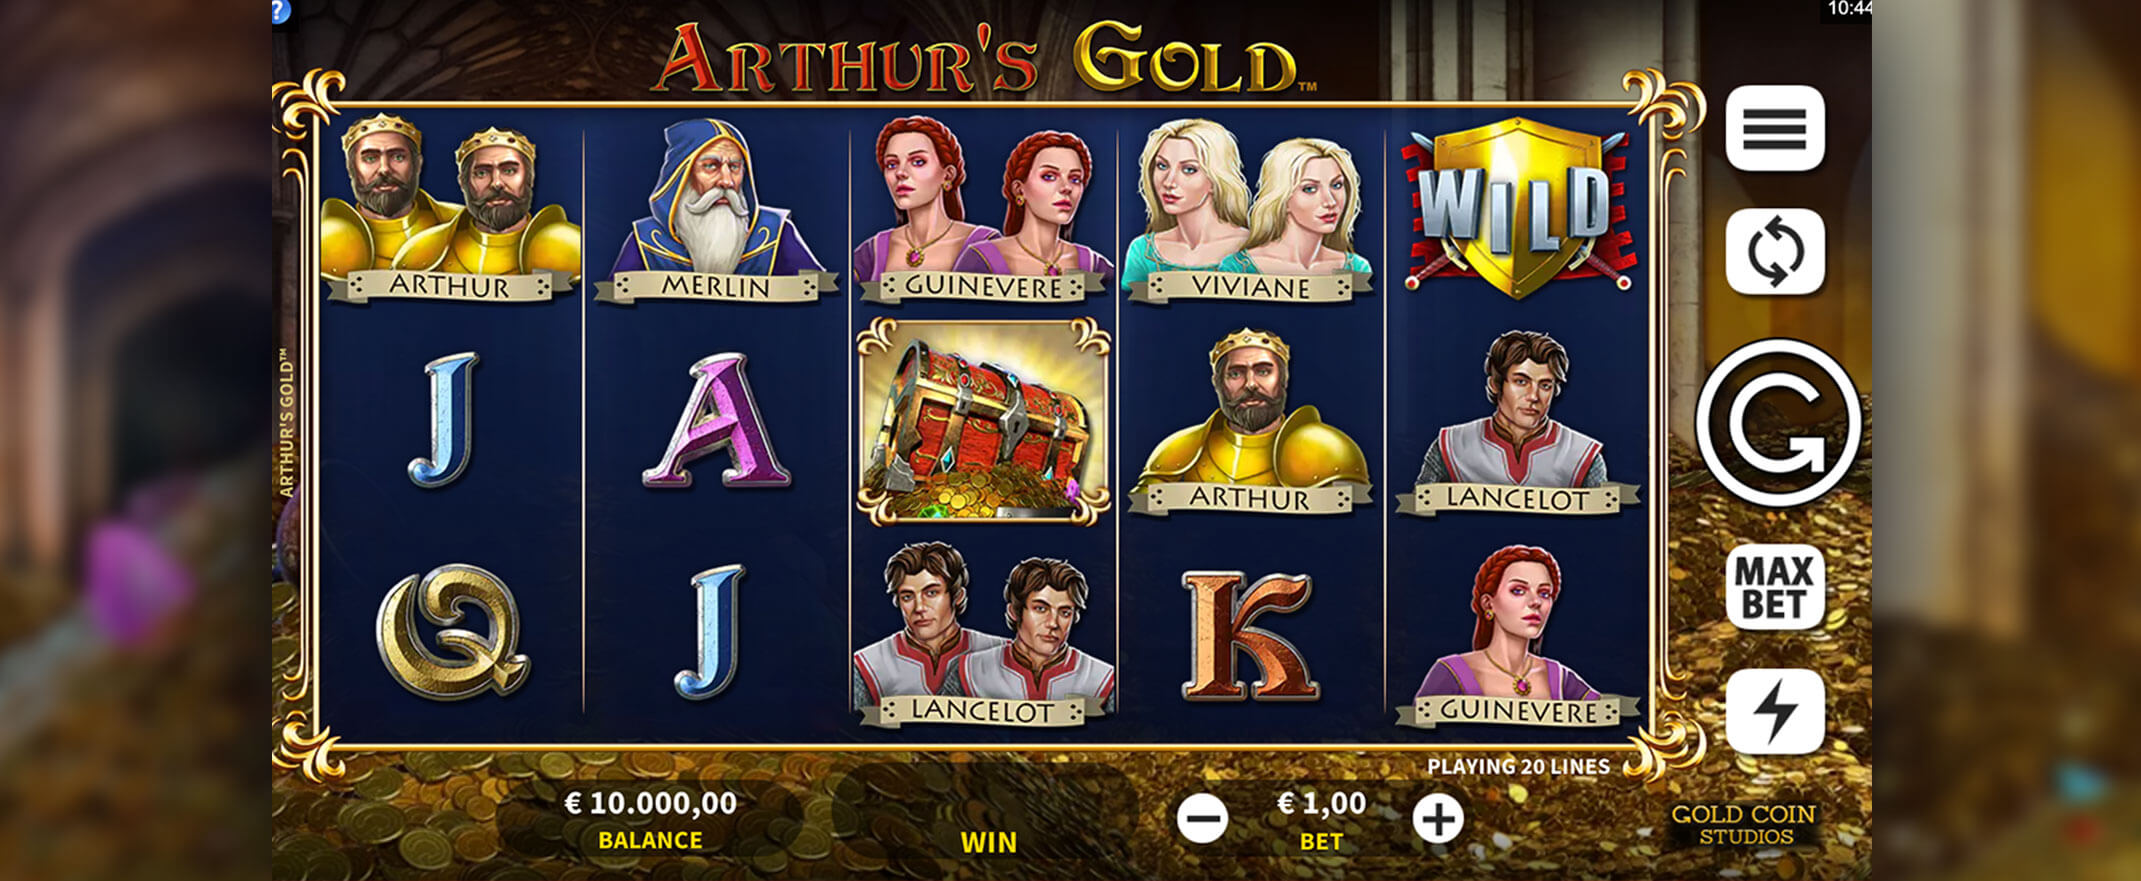 Arthur's Gold Spielautomaten Bewertung